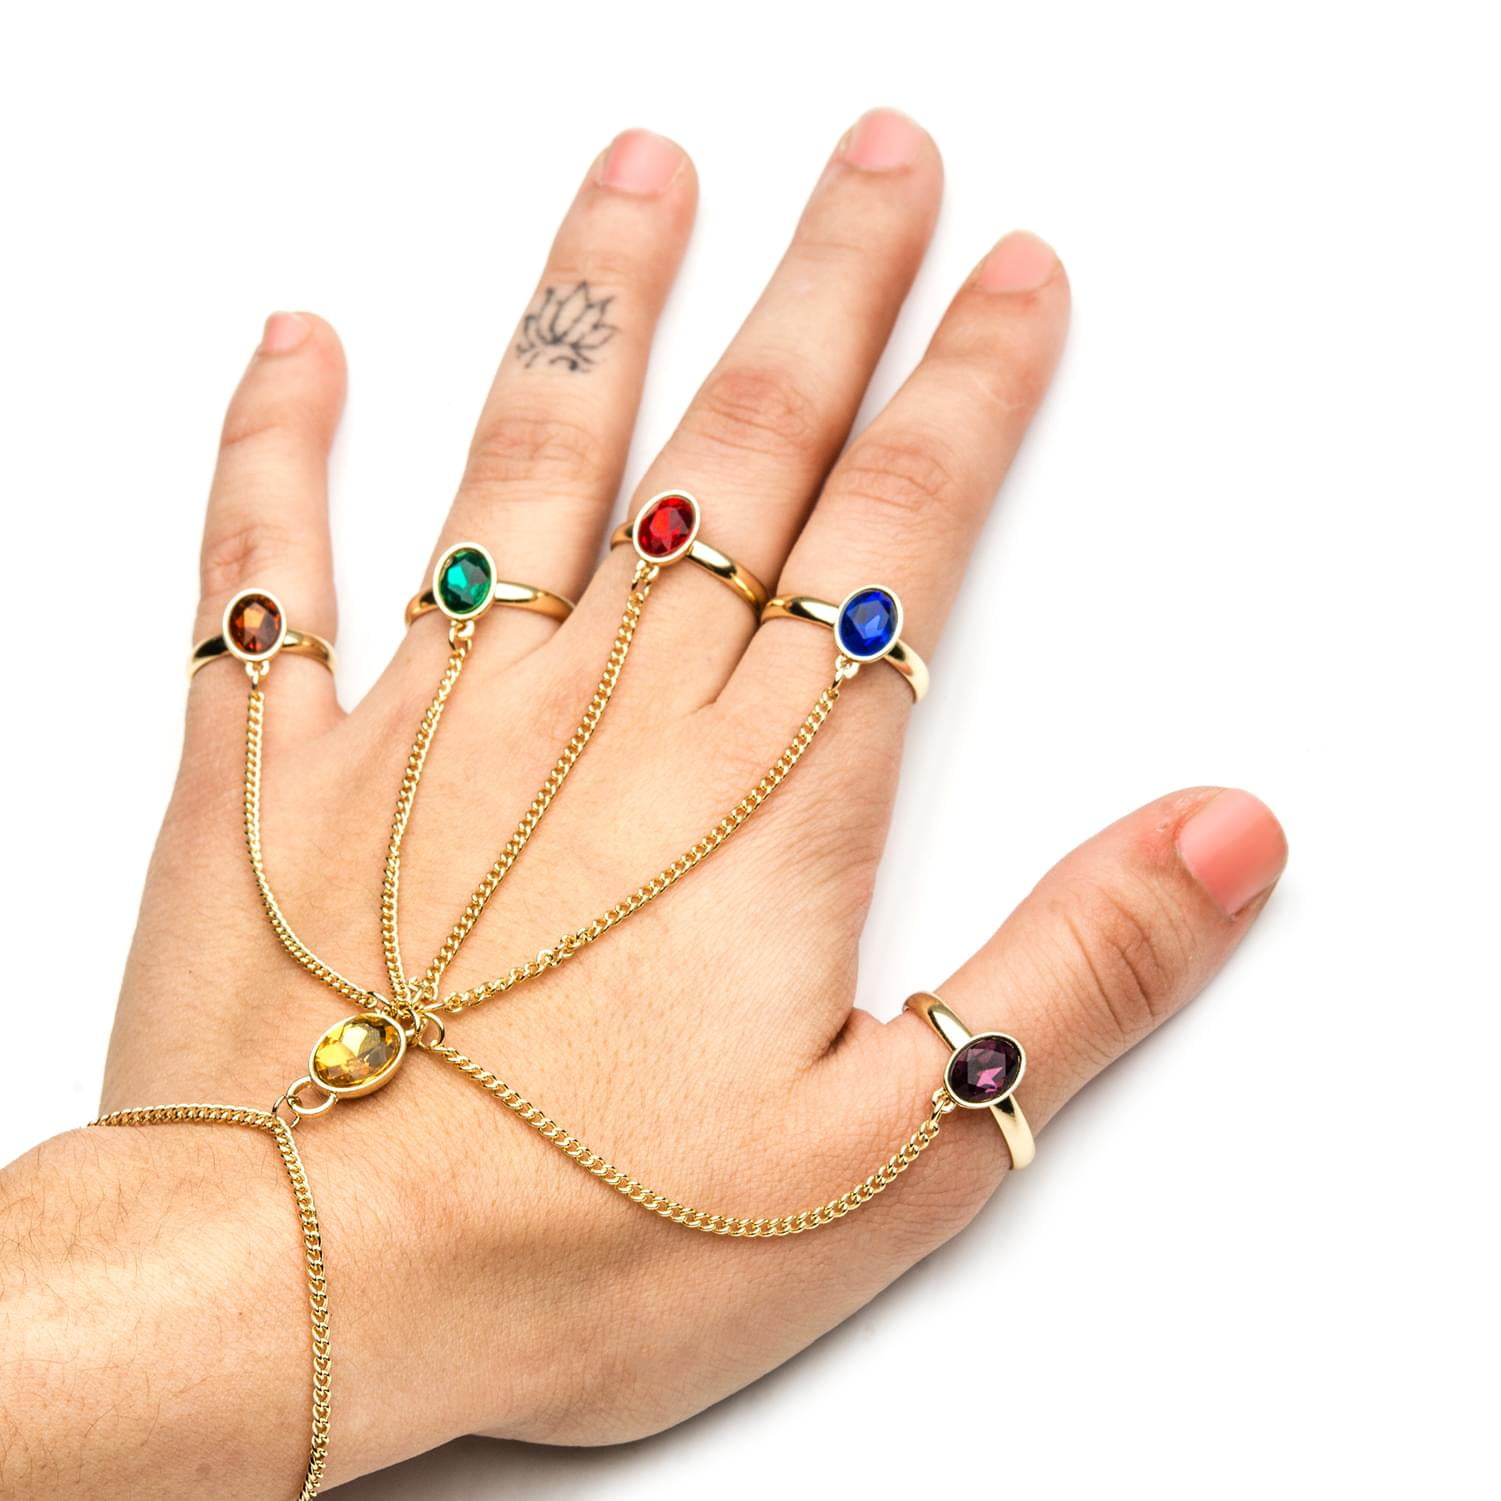 Jeweled Hand Chain Ring Bracelet | Torrid | 1920s accessories, Hand chain  jewelry, Hand accessories